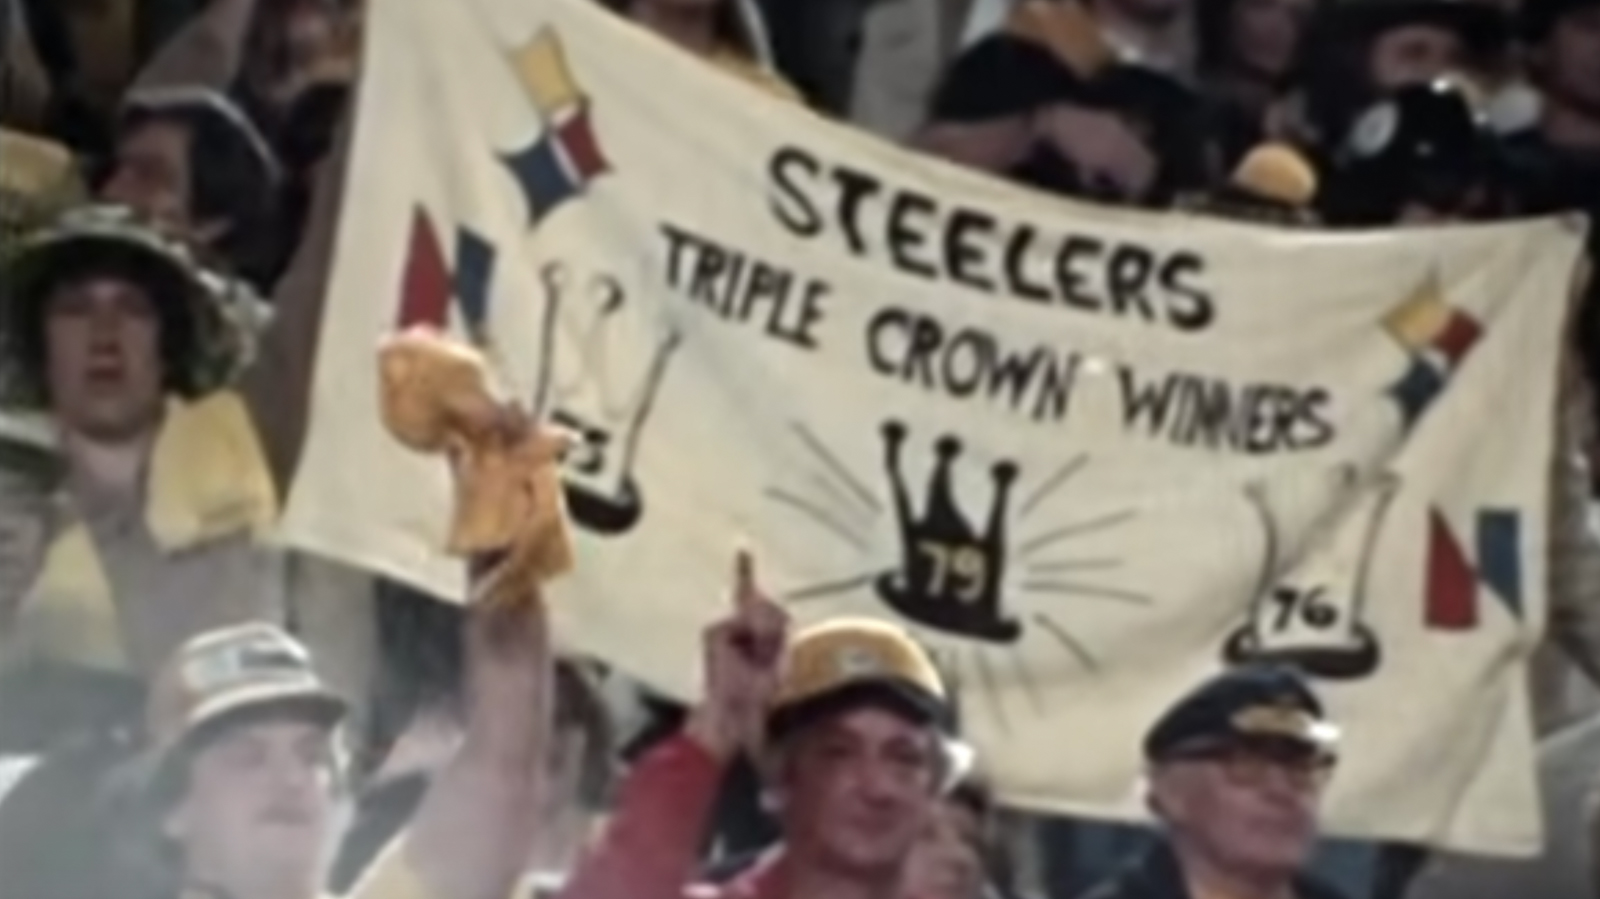 Steelers fans following Super Bowl XIII win